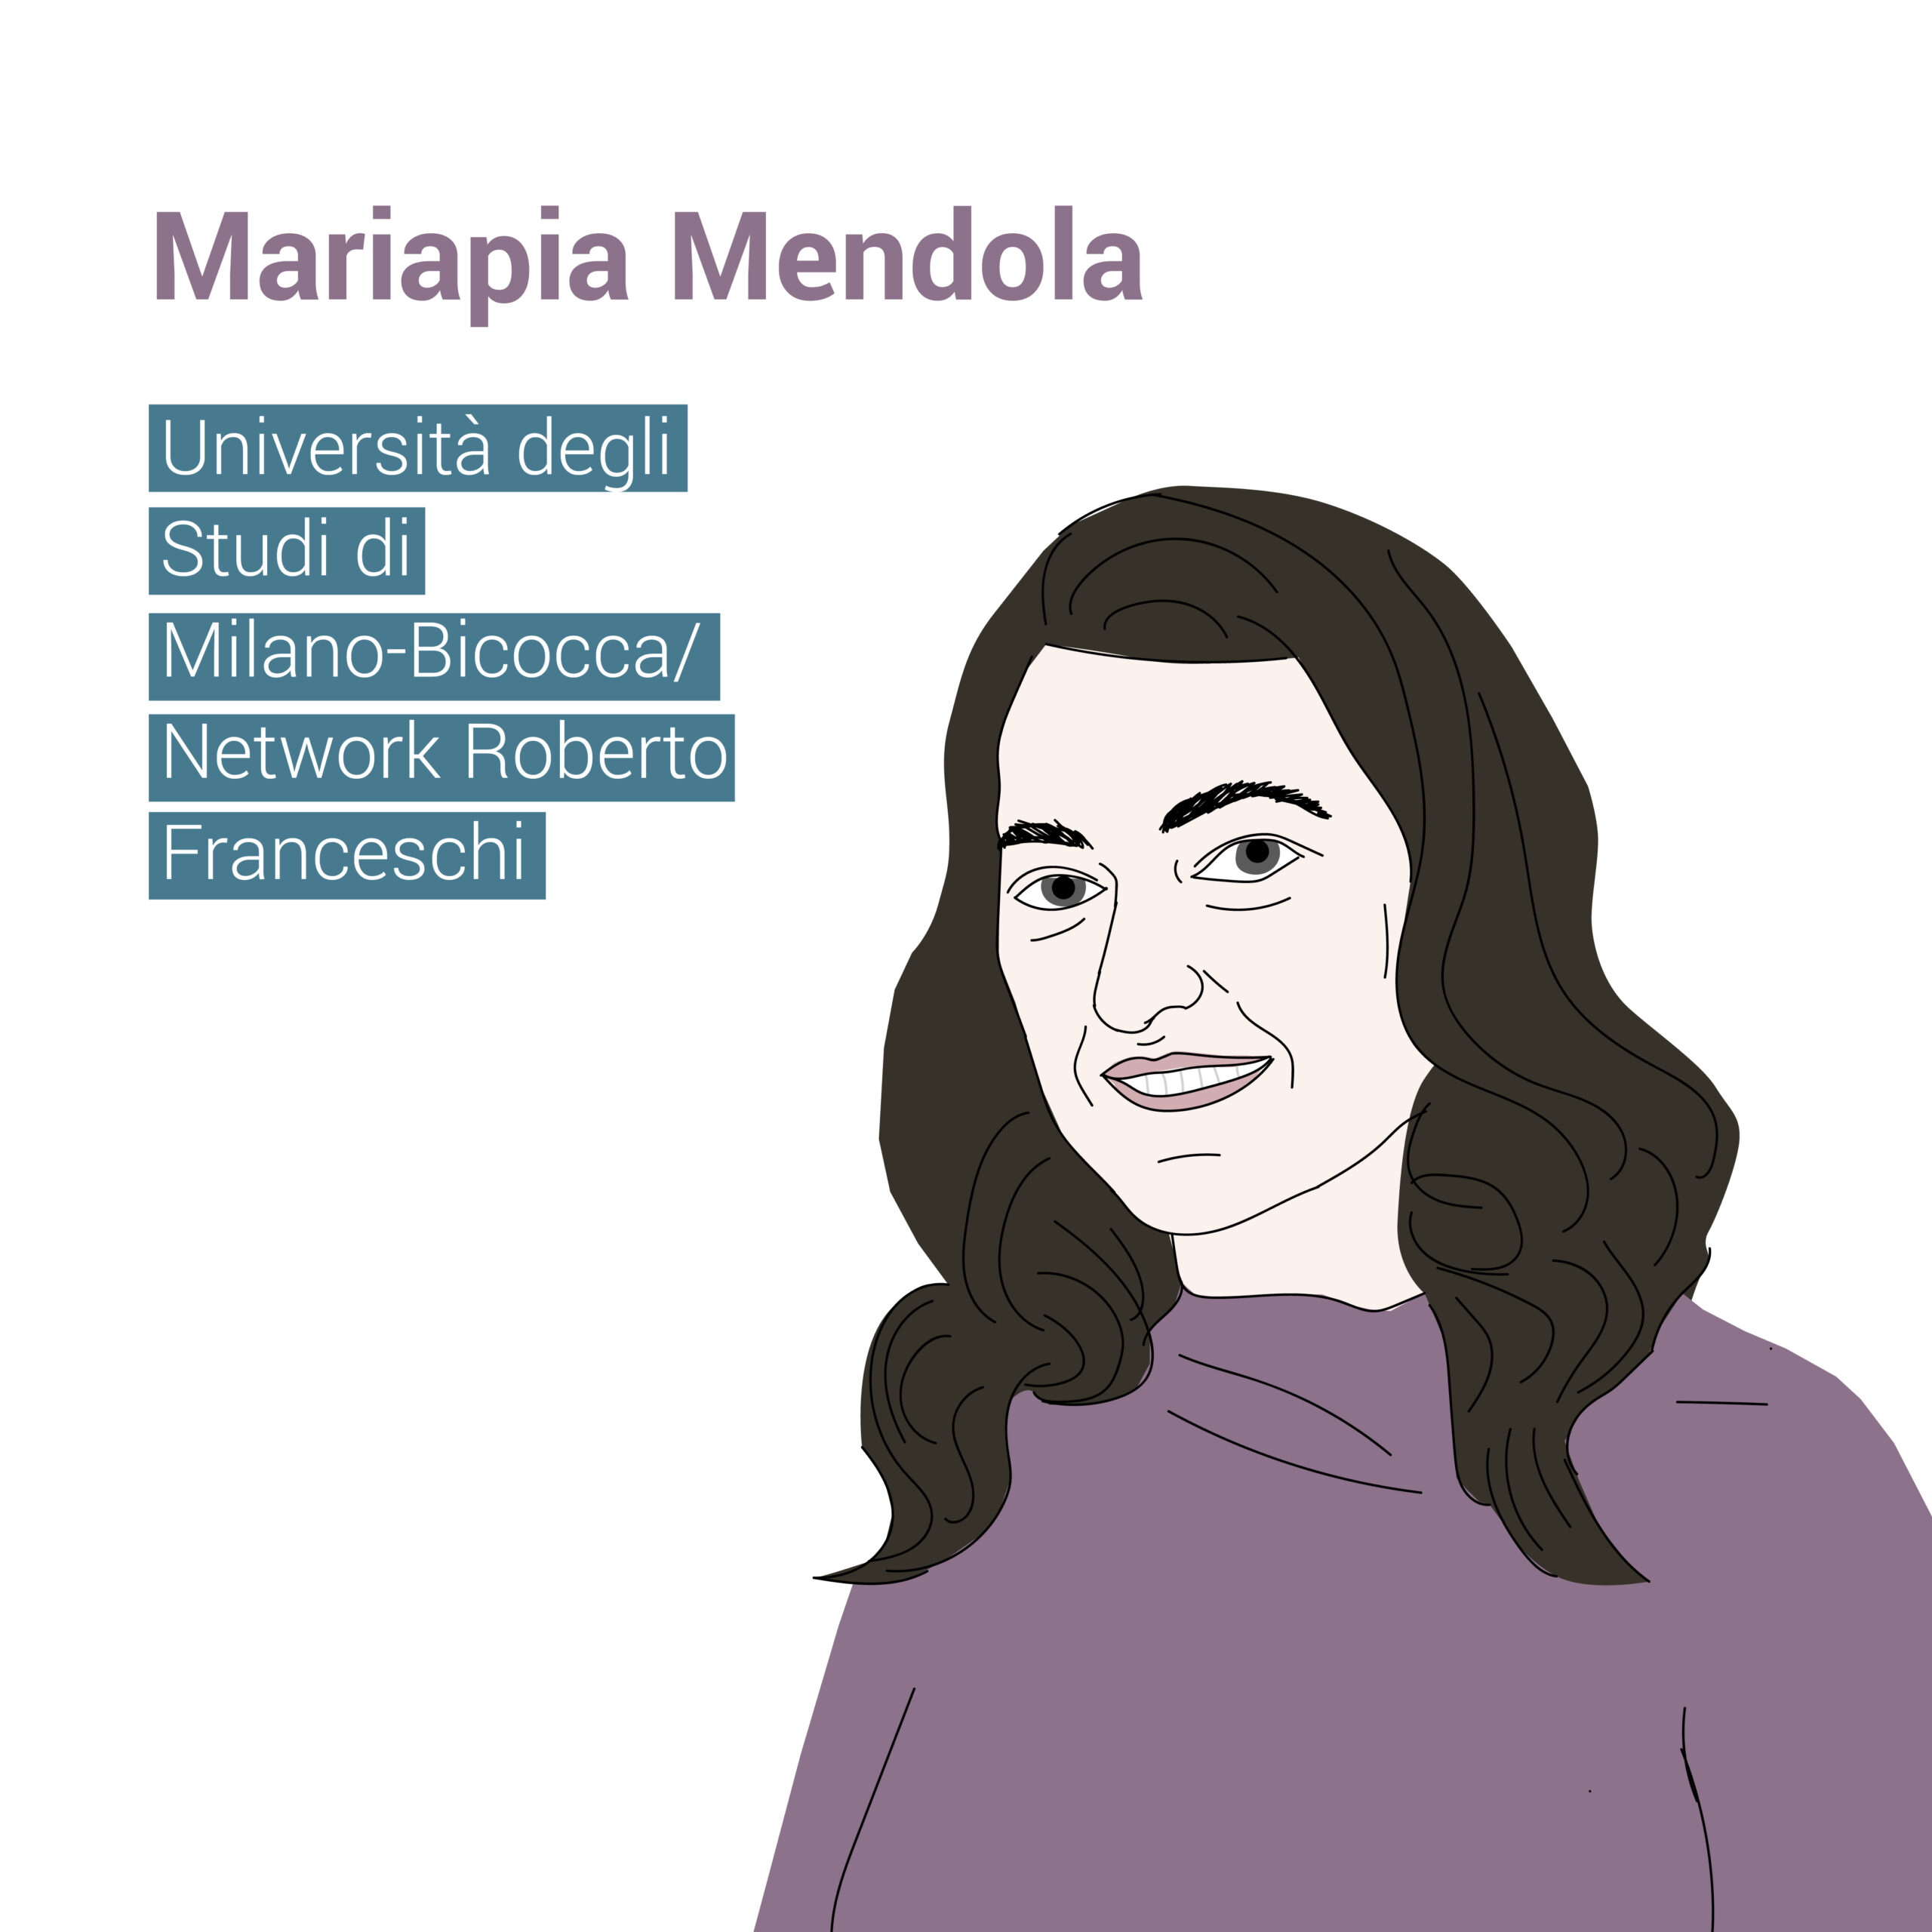 Mariapia Mendola